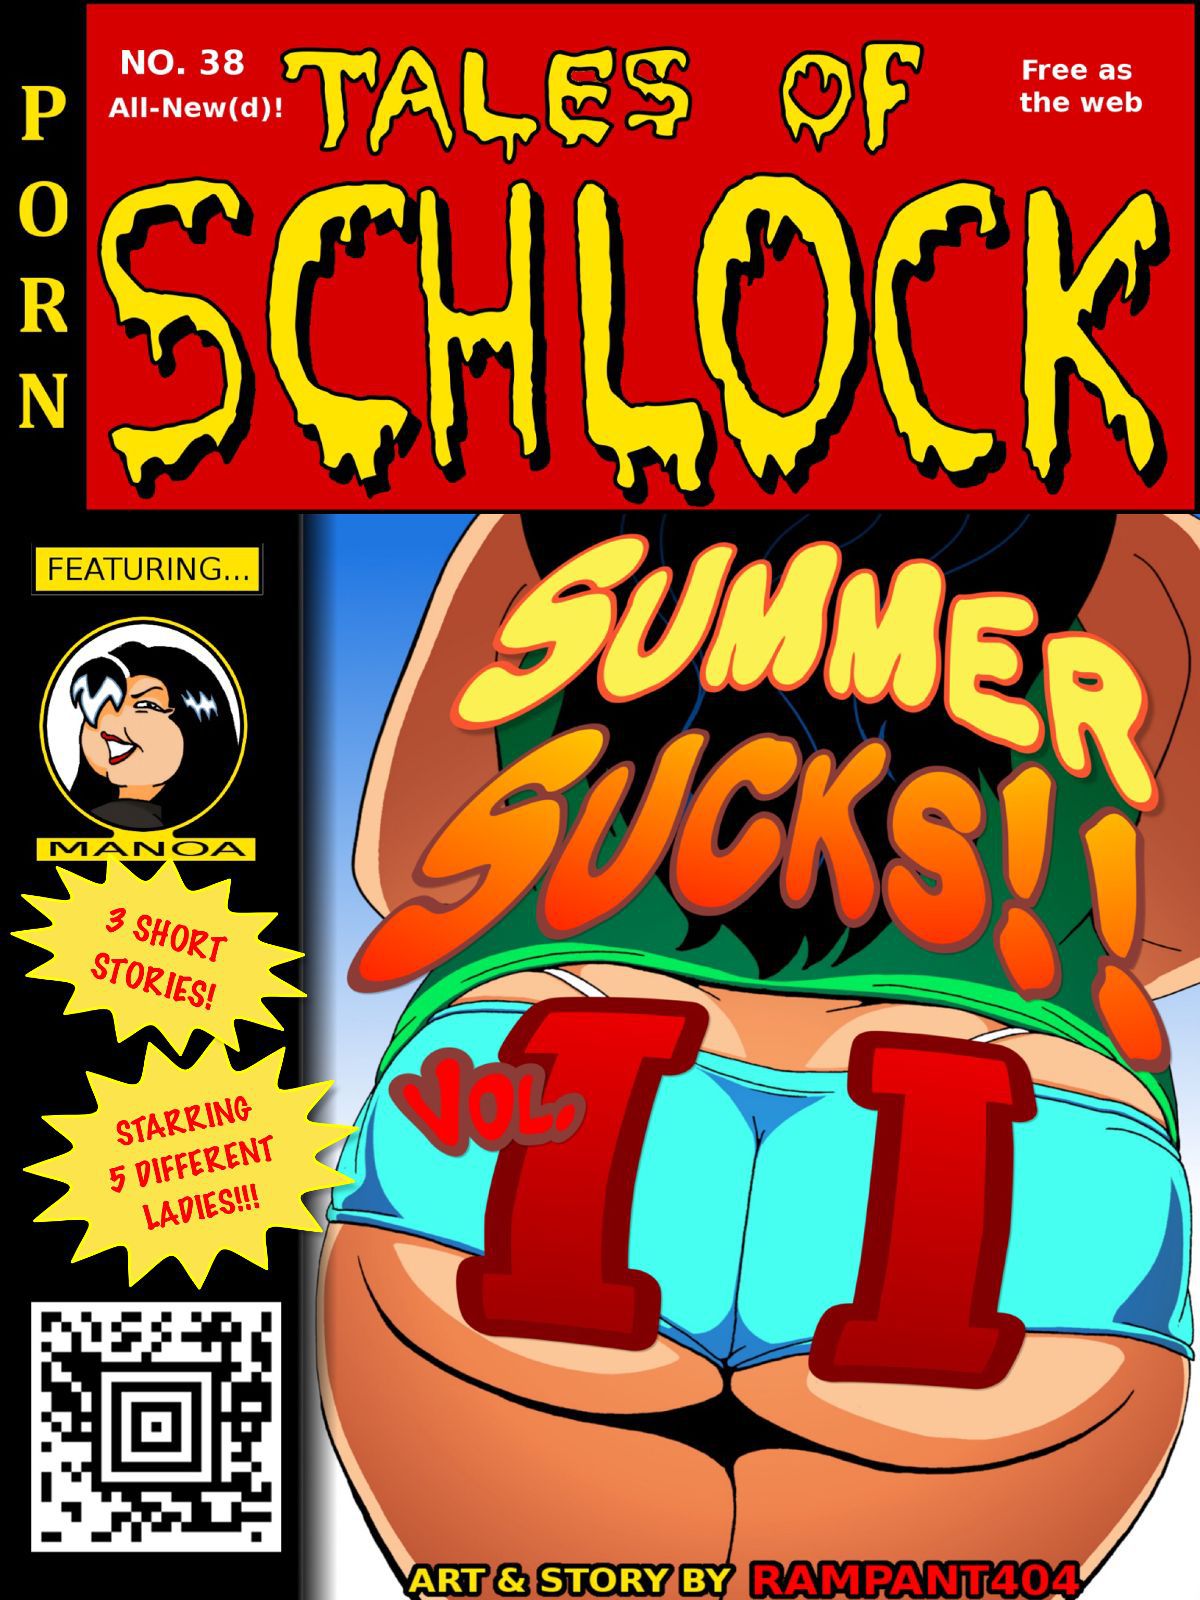 [Rampant404] Tales of Schlock #38: Summer Sucks! Vol. 2 1